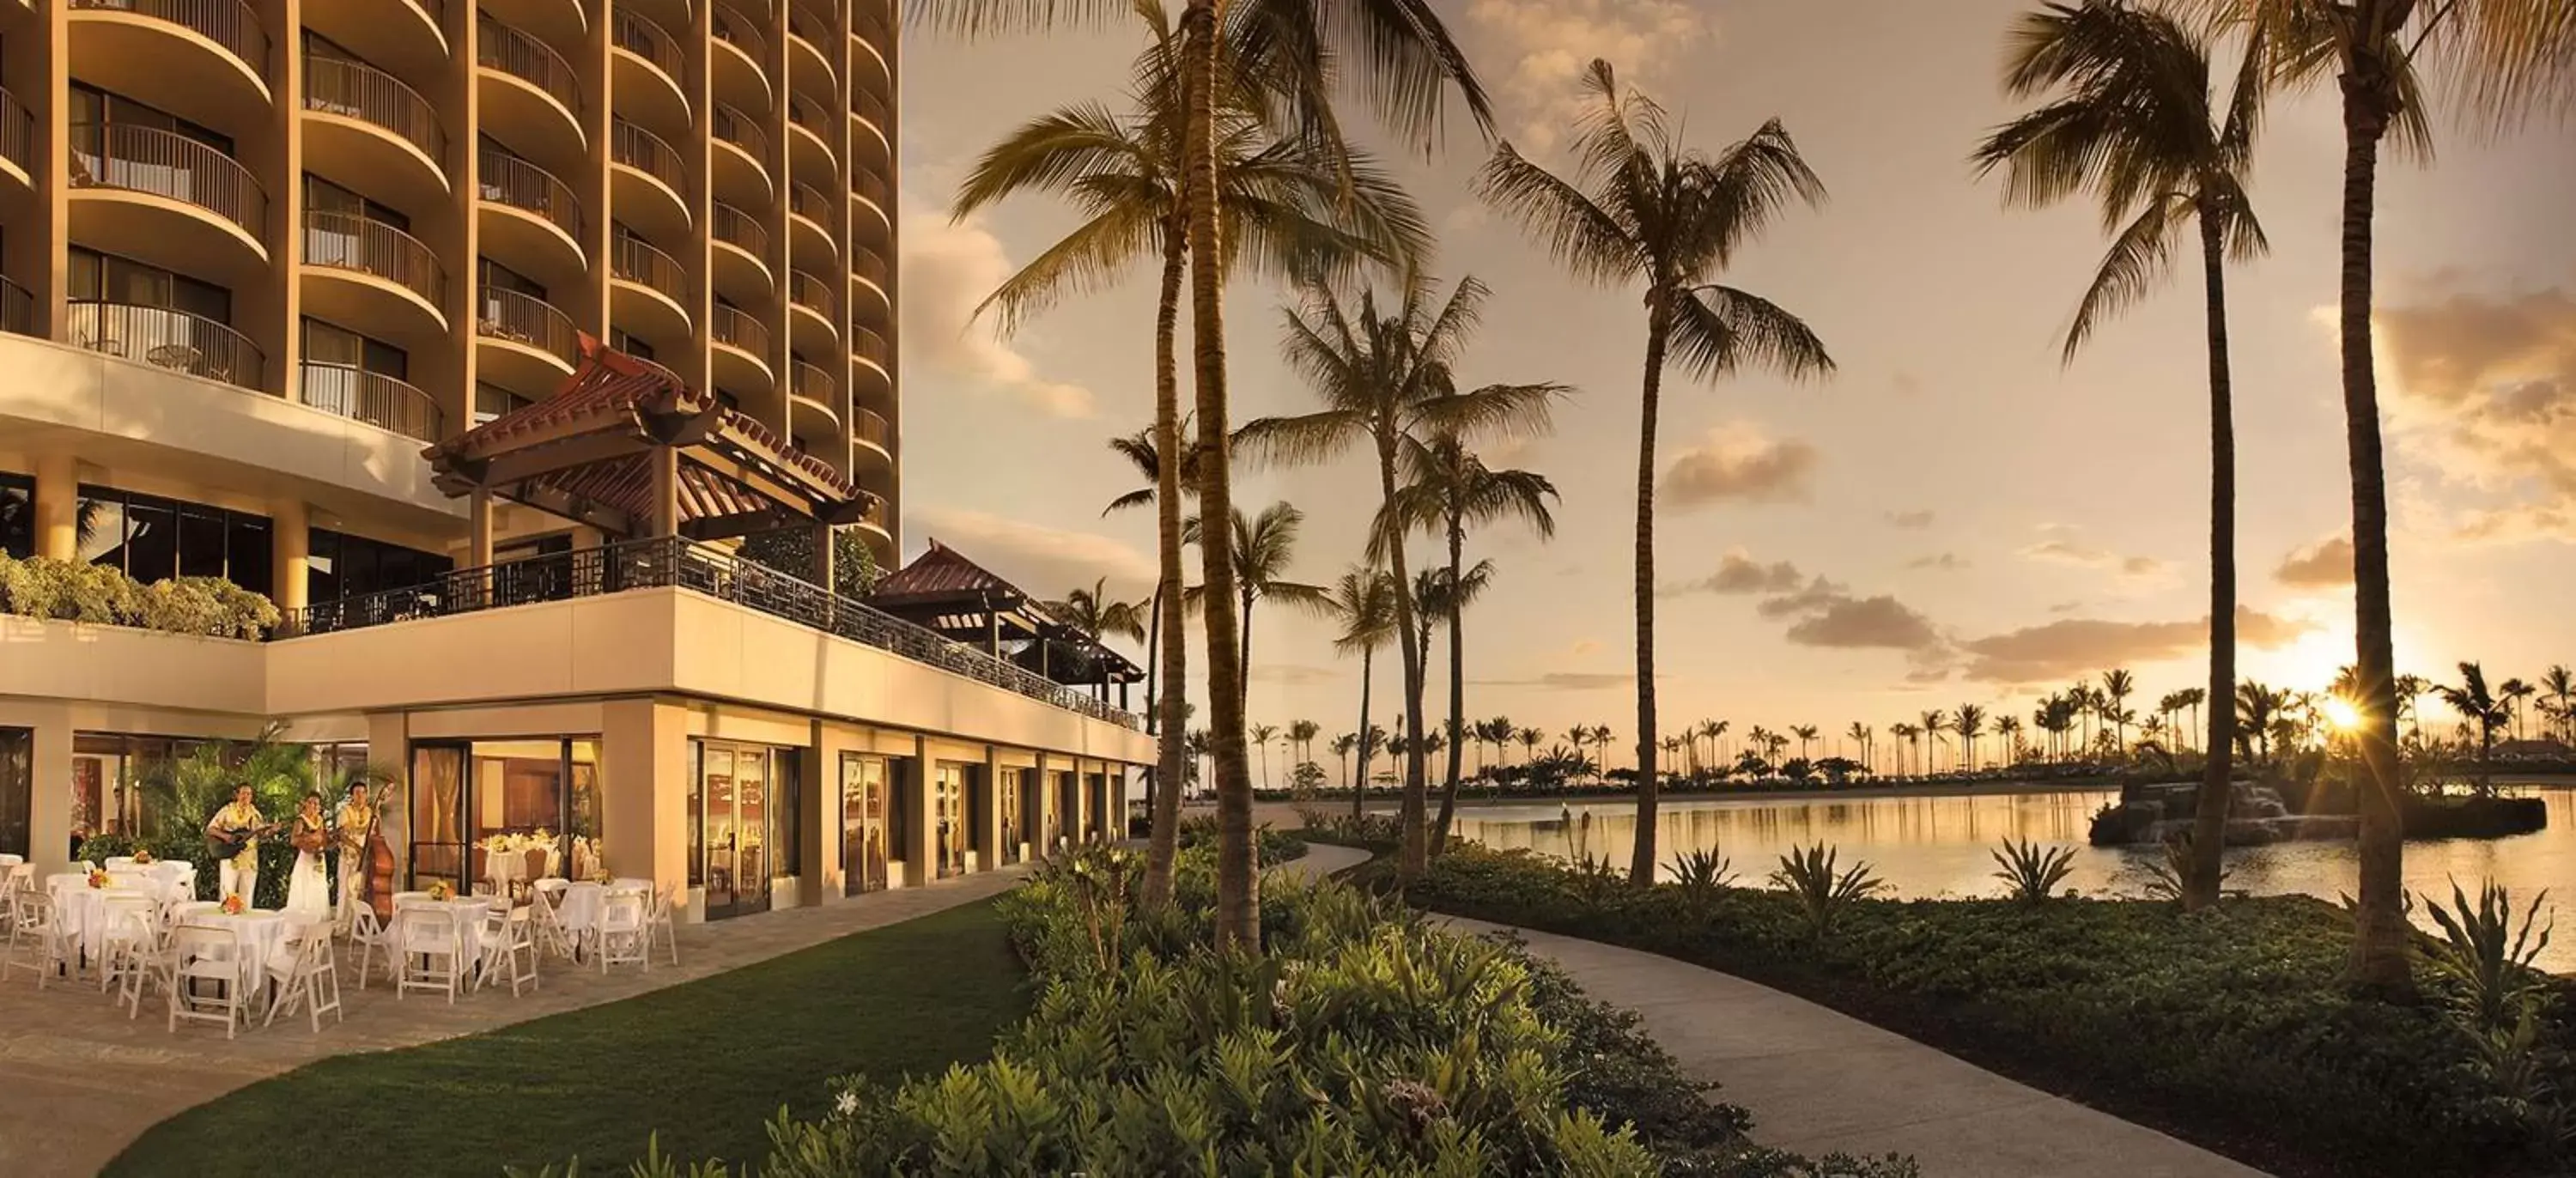 Property building in Hilton Hawaiian Village Waikiki Beach Resort